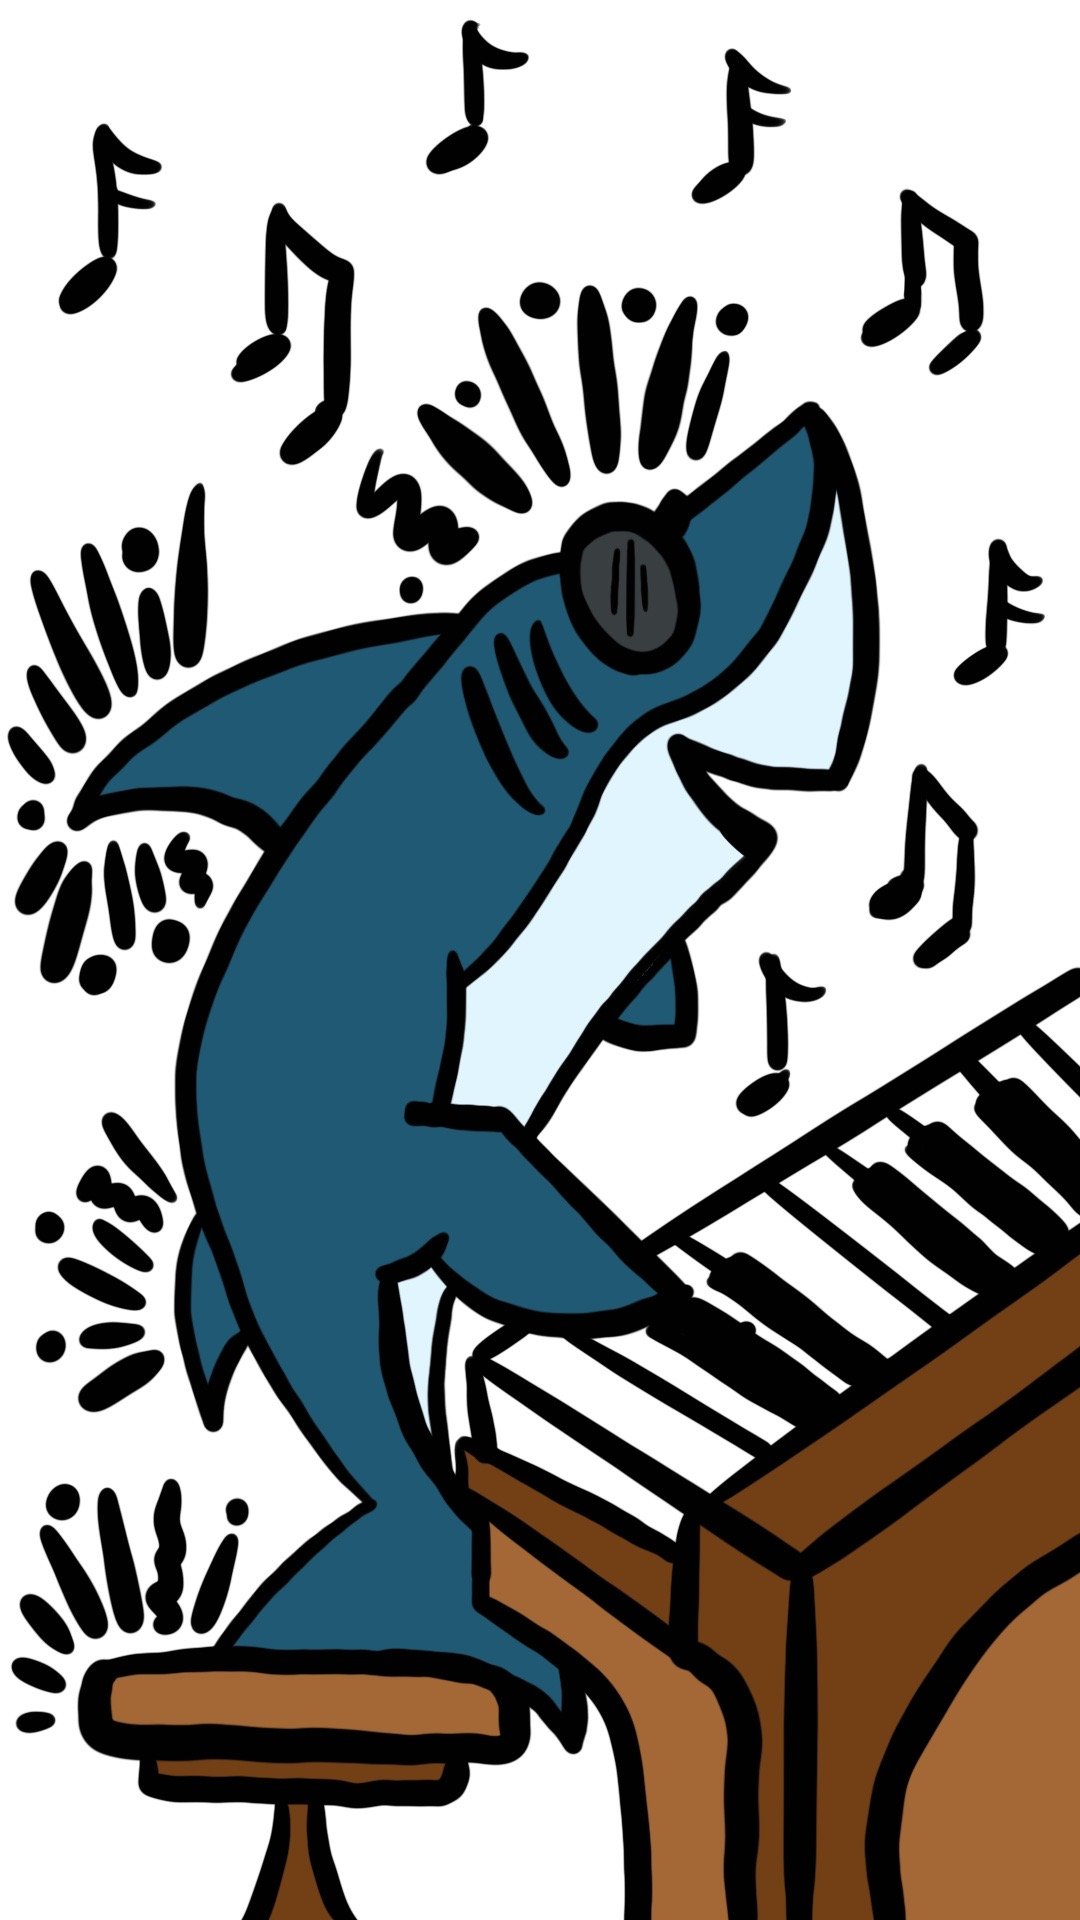 Shark on piano